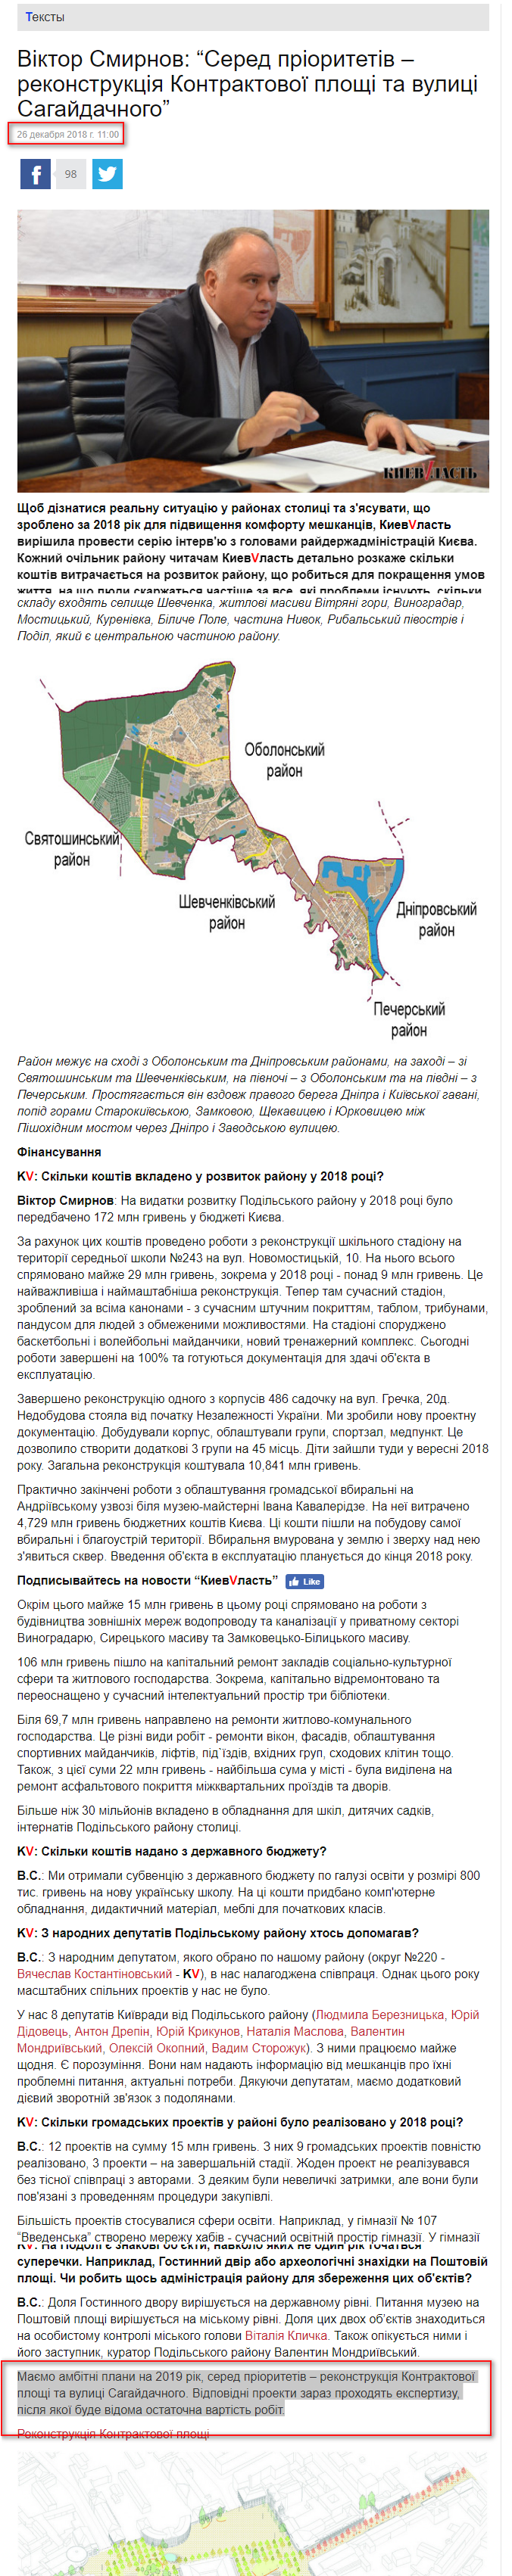 http://kievvlast.com.ua/text/viktor-smirnov-sered-prioritetivrekonstruktsiya-kontraktovoi-ploshhi-ta-vulitsi-sagajdachnogo